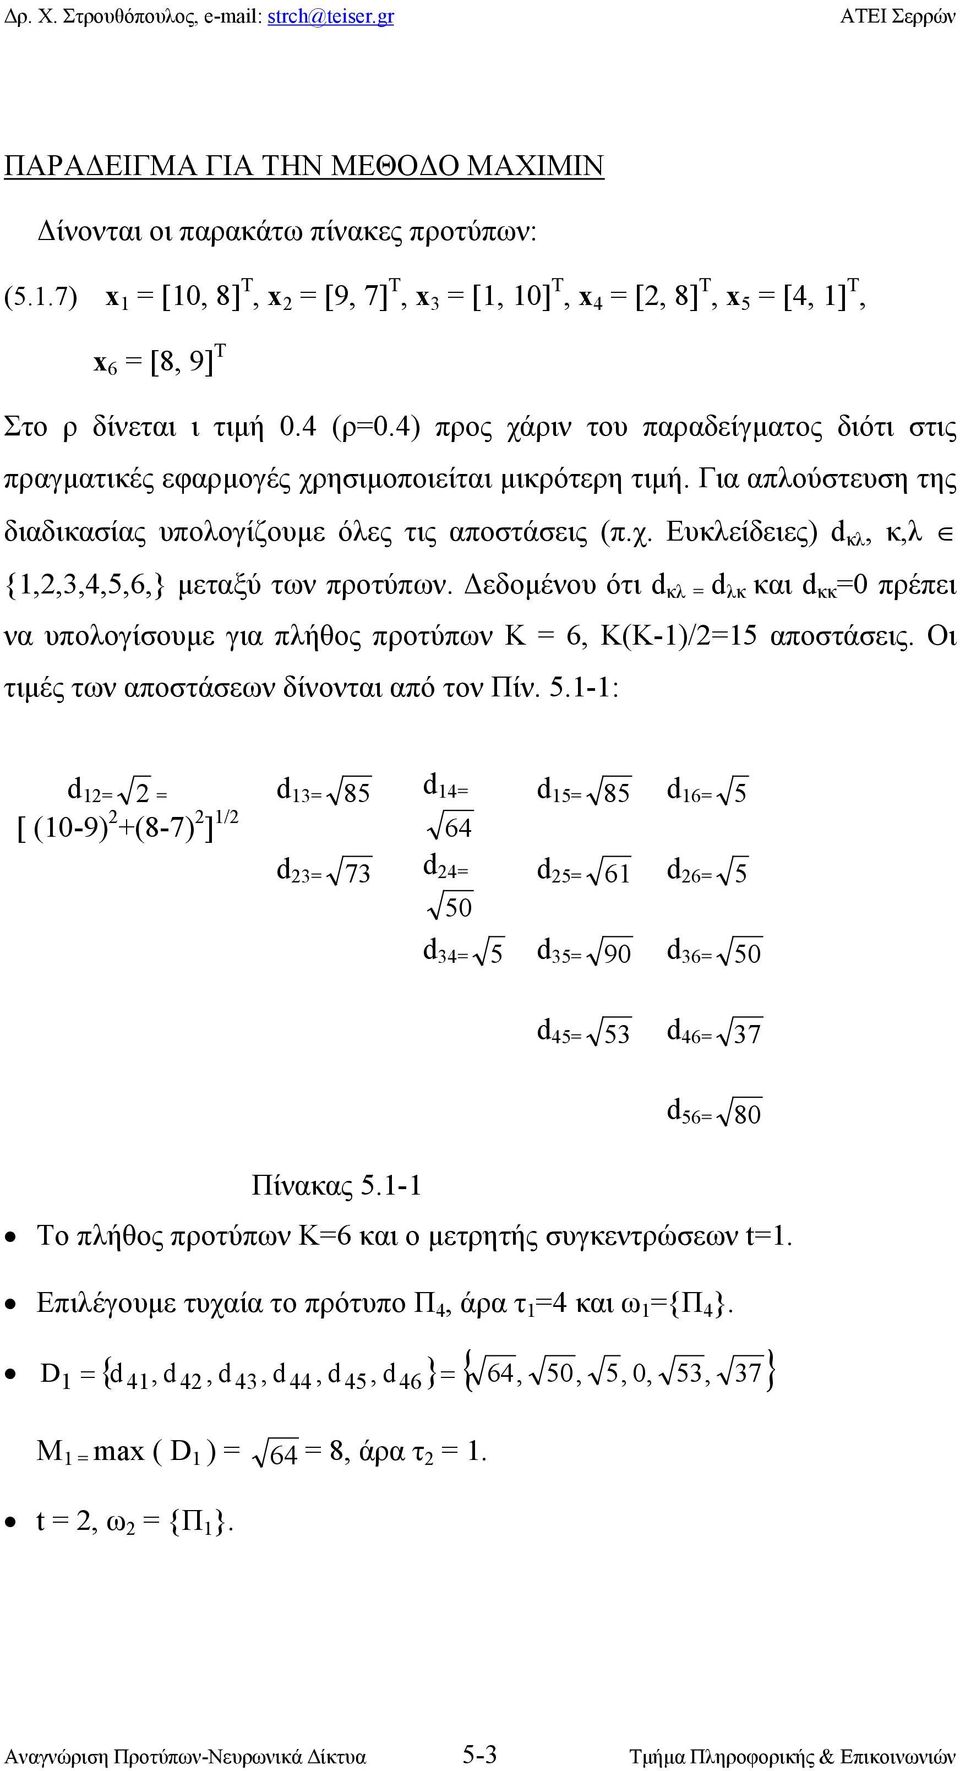 εδοµένου ότι d κλ = d λκ και d κκ =0 πρέπει να υπολογίσουµε για πλήθος προτύπων Κ = 6, Κ(Κ-)/2=5 αποστάσεις. Οι τιµές των αποστάσεων δίνονται από τον Πίν. 5.